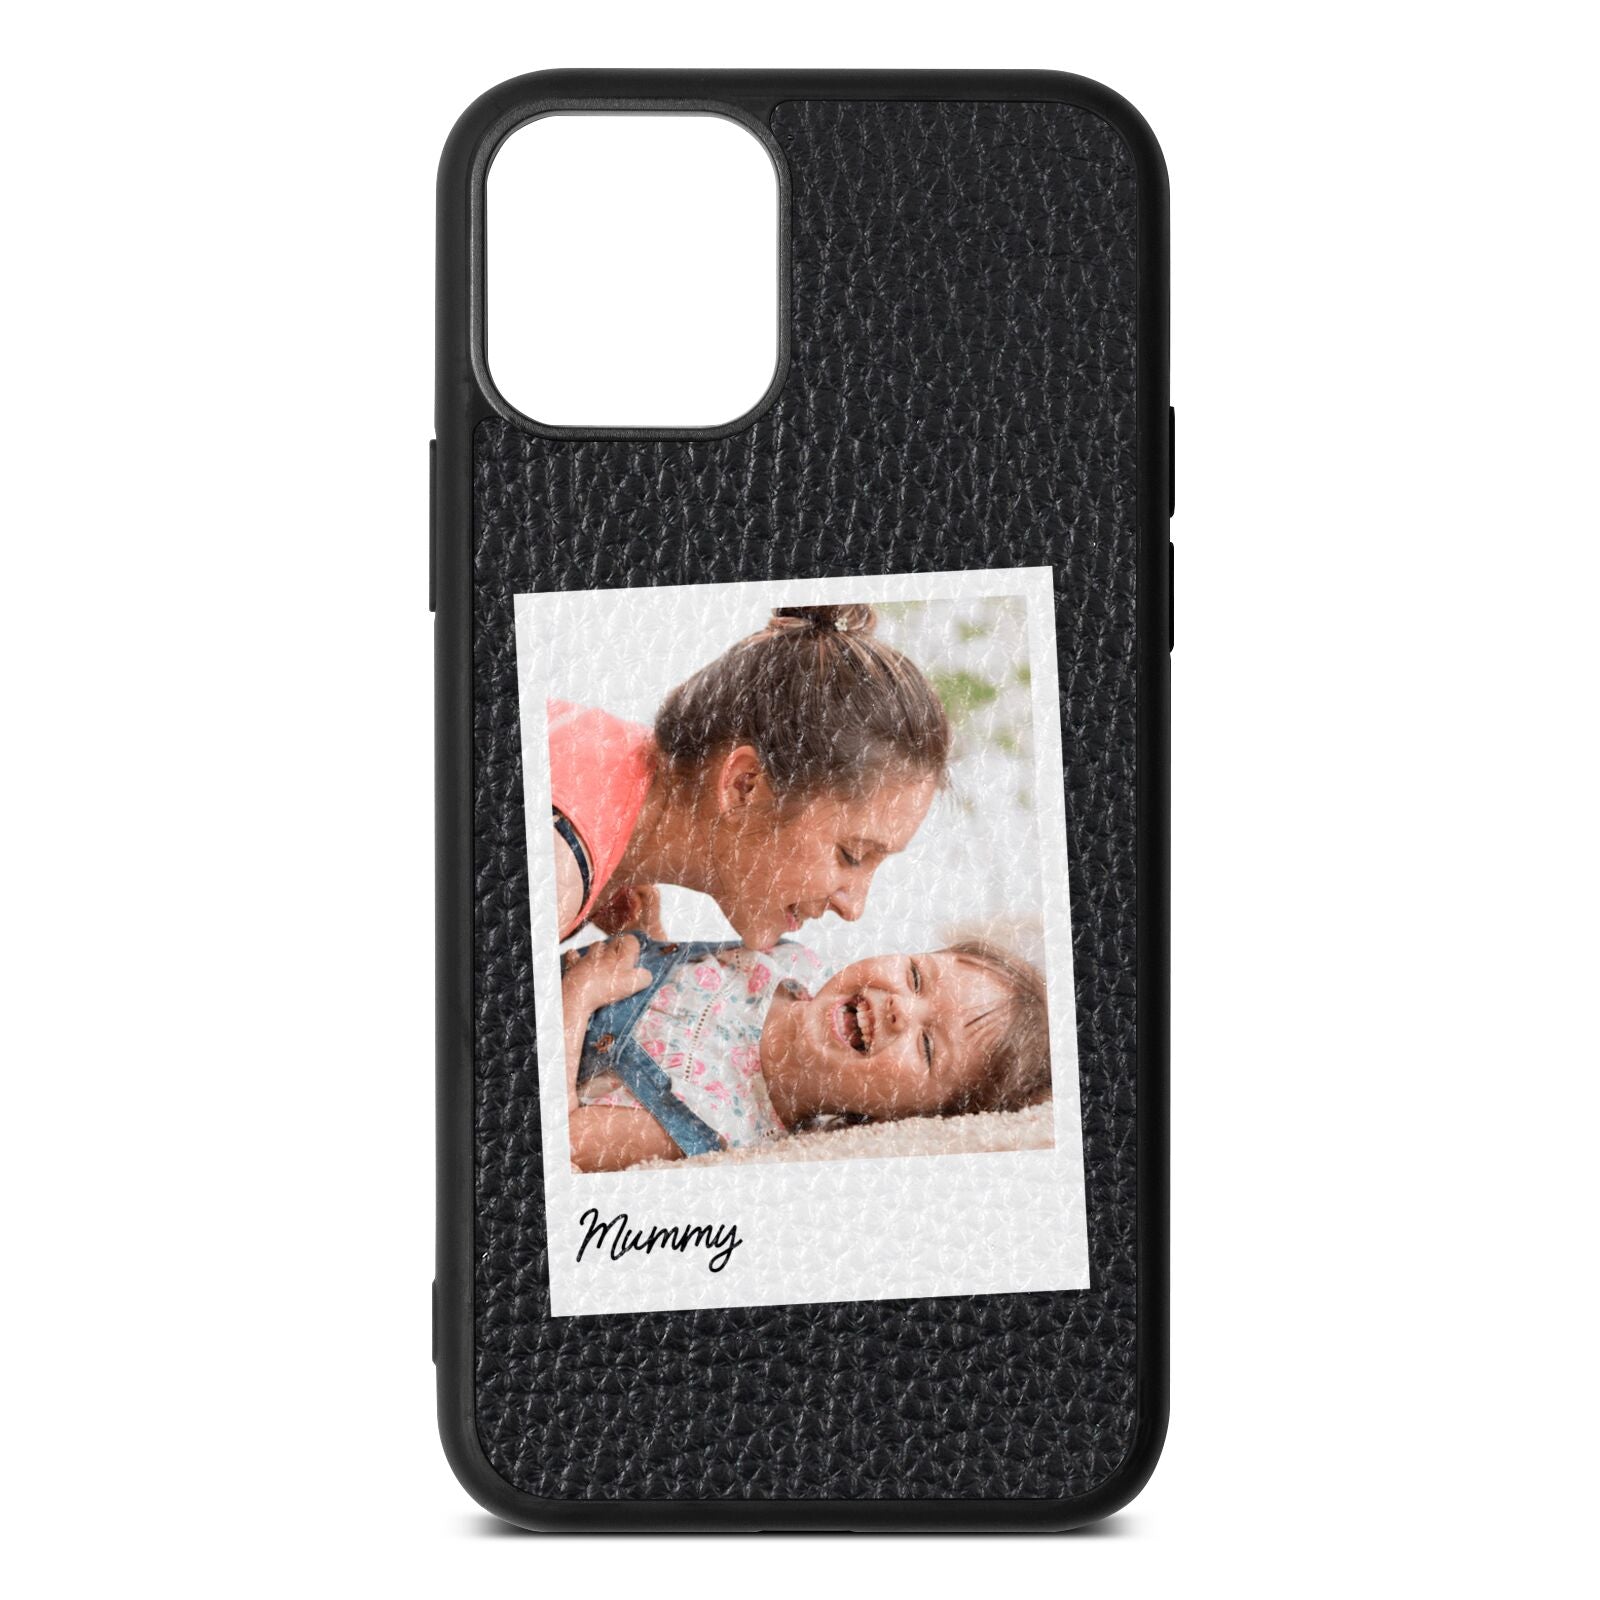 Mummy Photo Black Pebble Leather iPhone 11 Pro Case